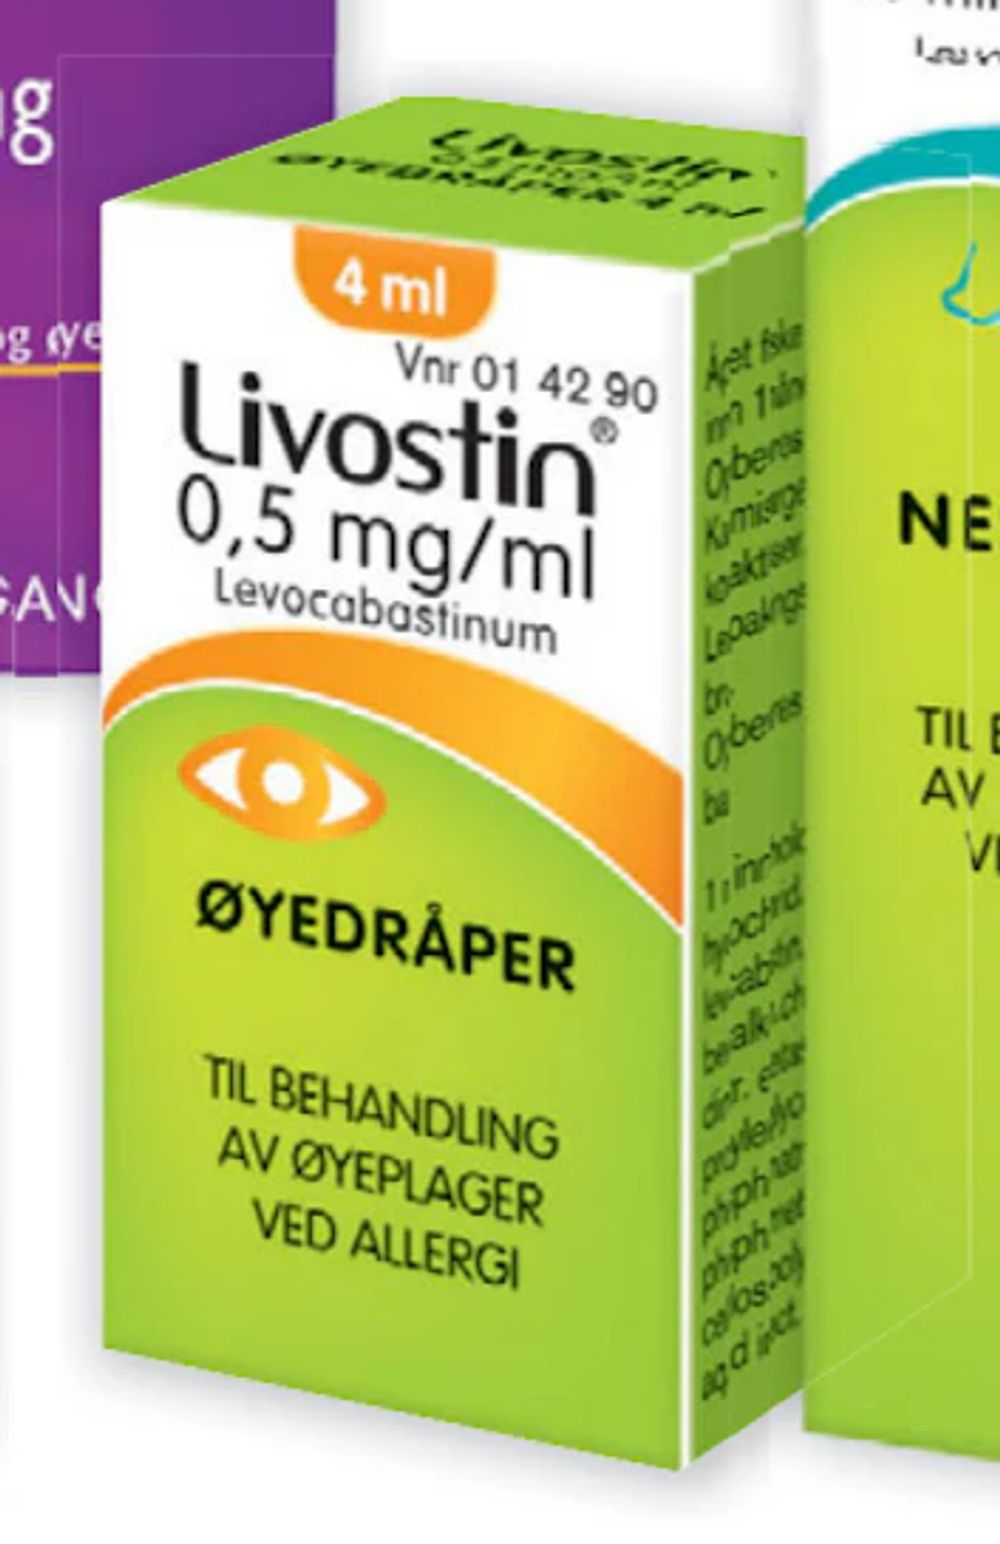 Tilbud på Livostin øyedråper 0,5 mg/ml fra Vitusapotek til 219,90 kr